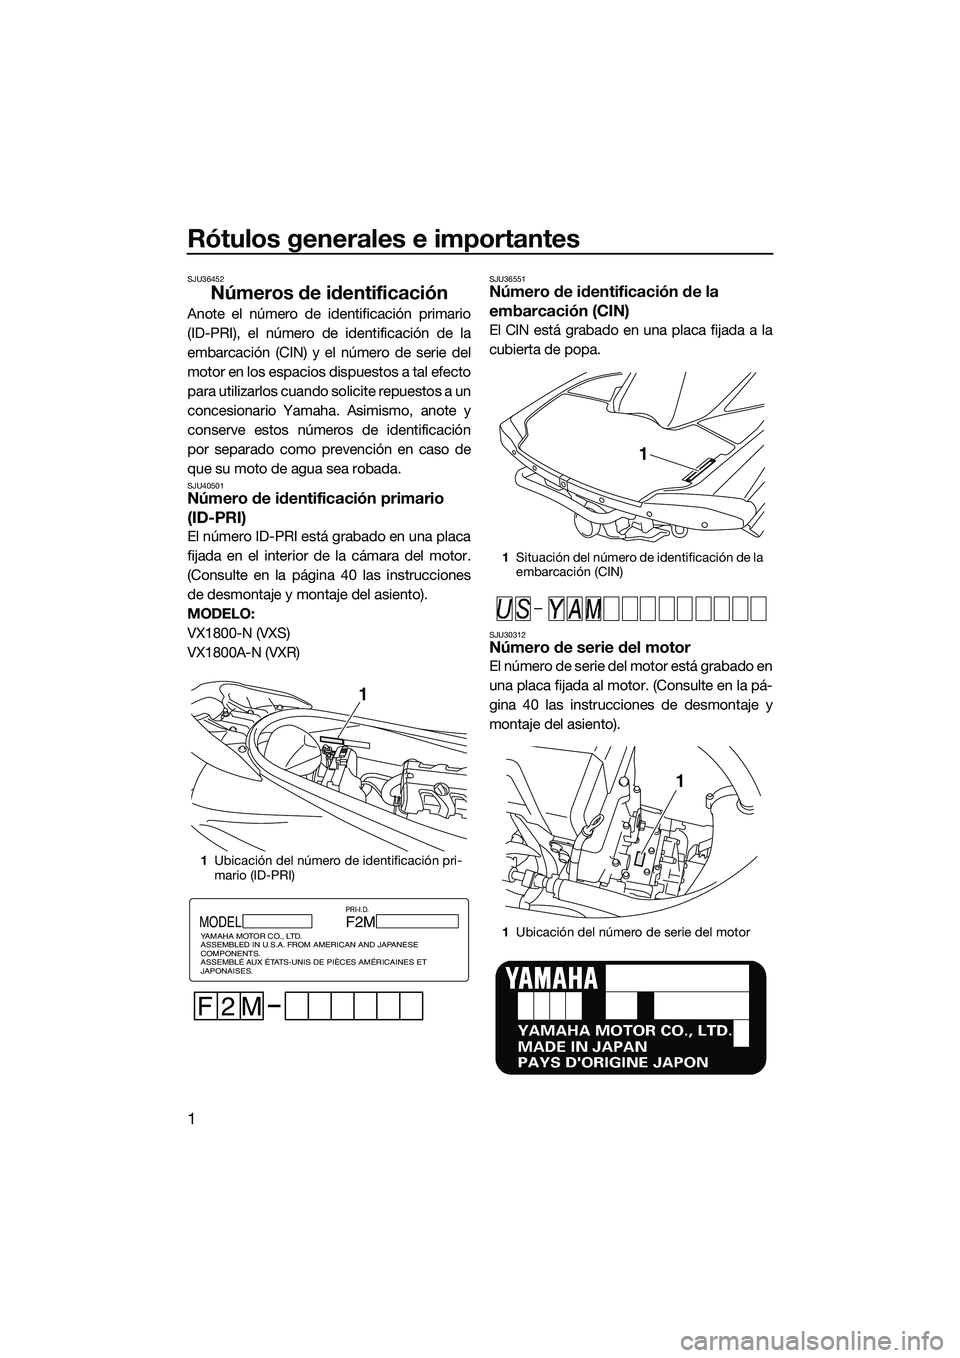 YAMAHA VXS 2014  Manuale de Empleo (in Spanish) Rótulos generales e importantes
1
SJU36452
Números de identificación
Anote el número de identificación primario
(ID-PRI), el número de identificación de la
embarcación (CIN) y el número de se